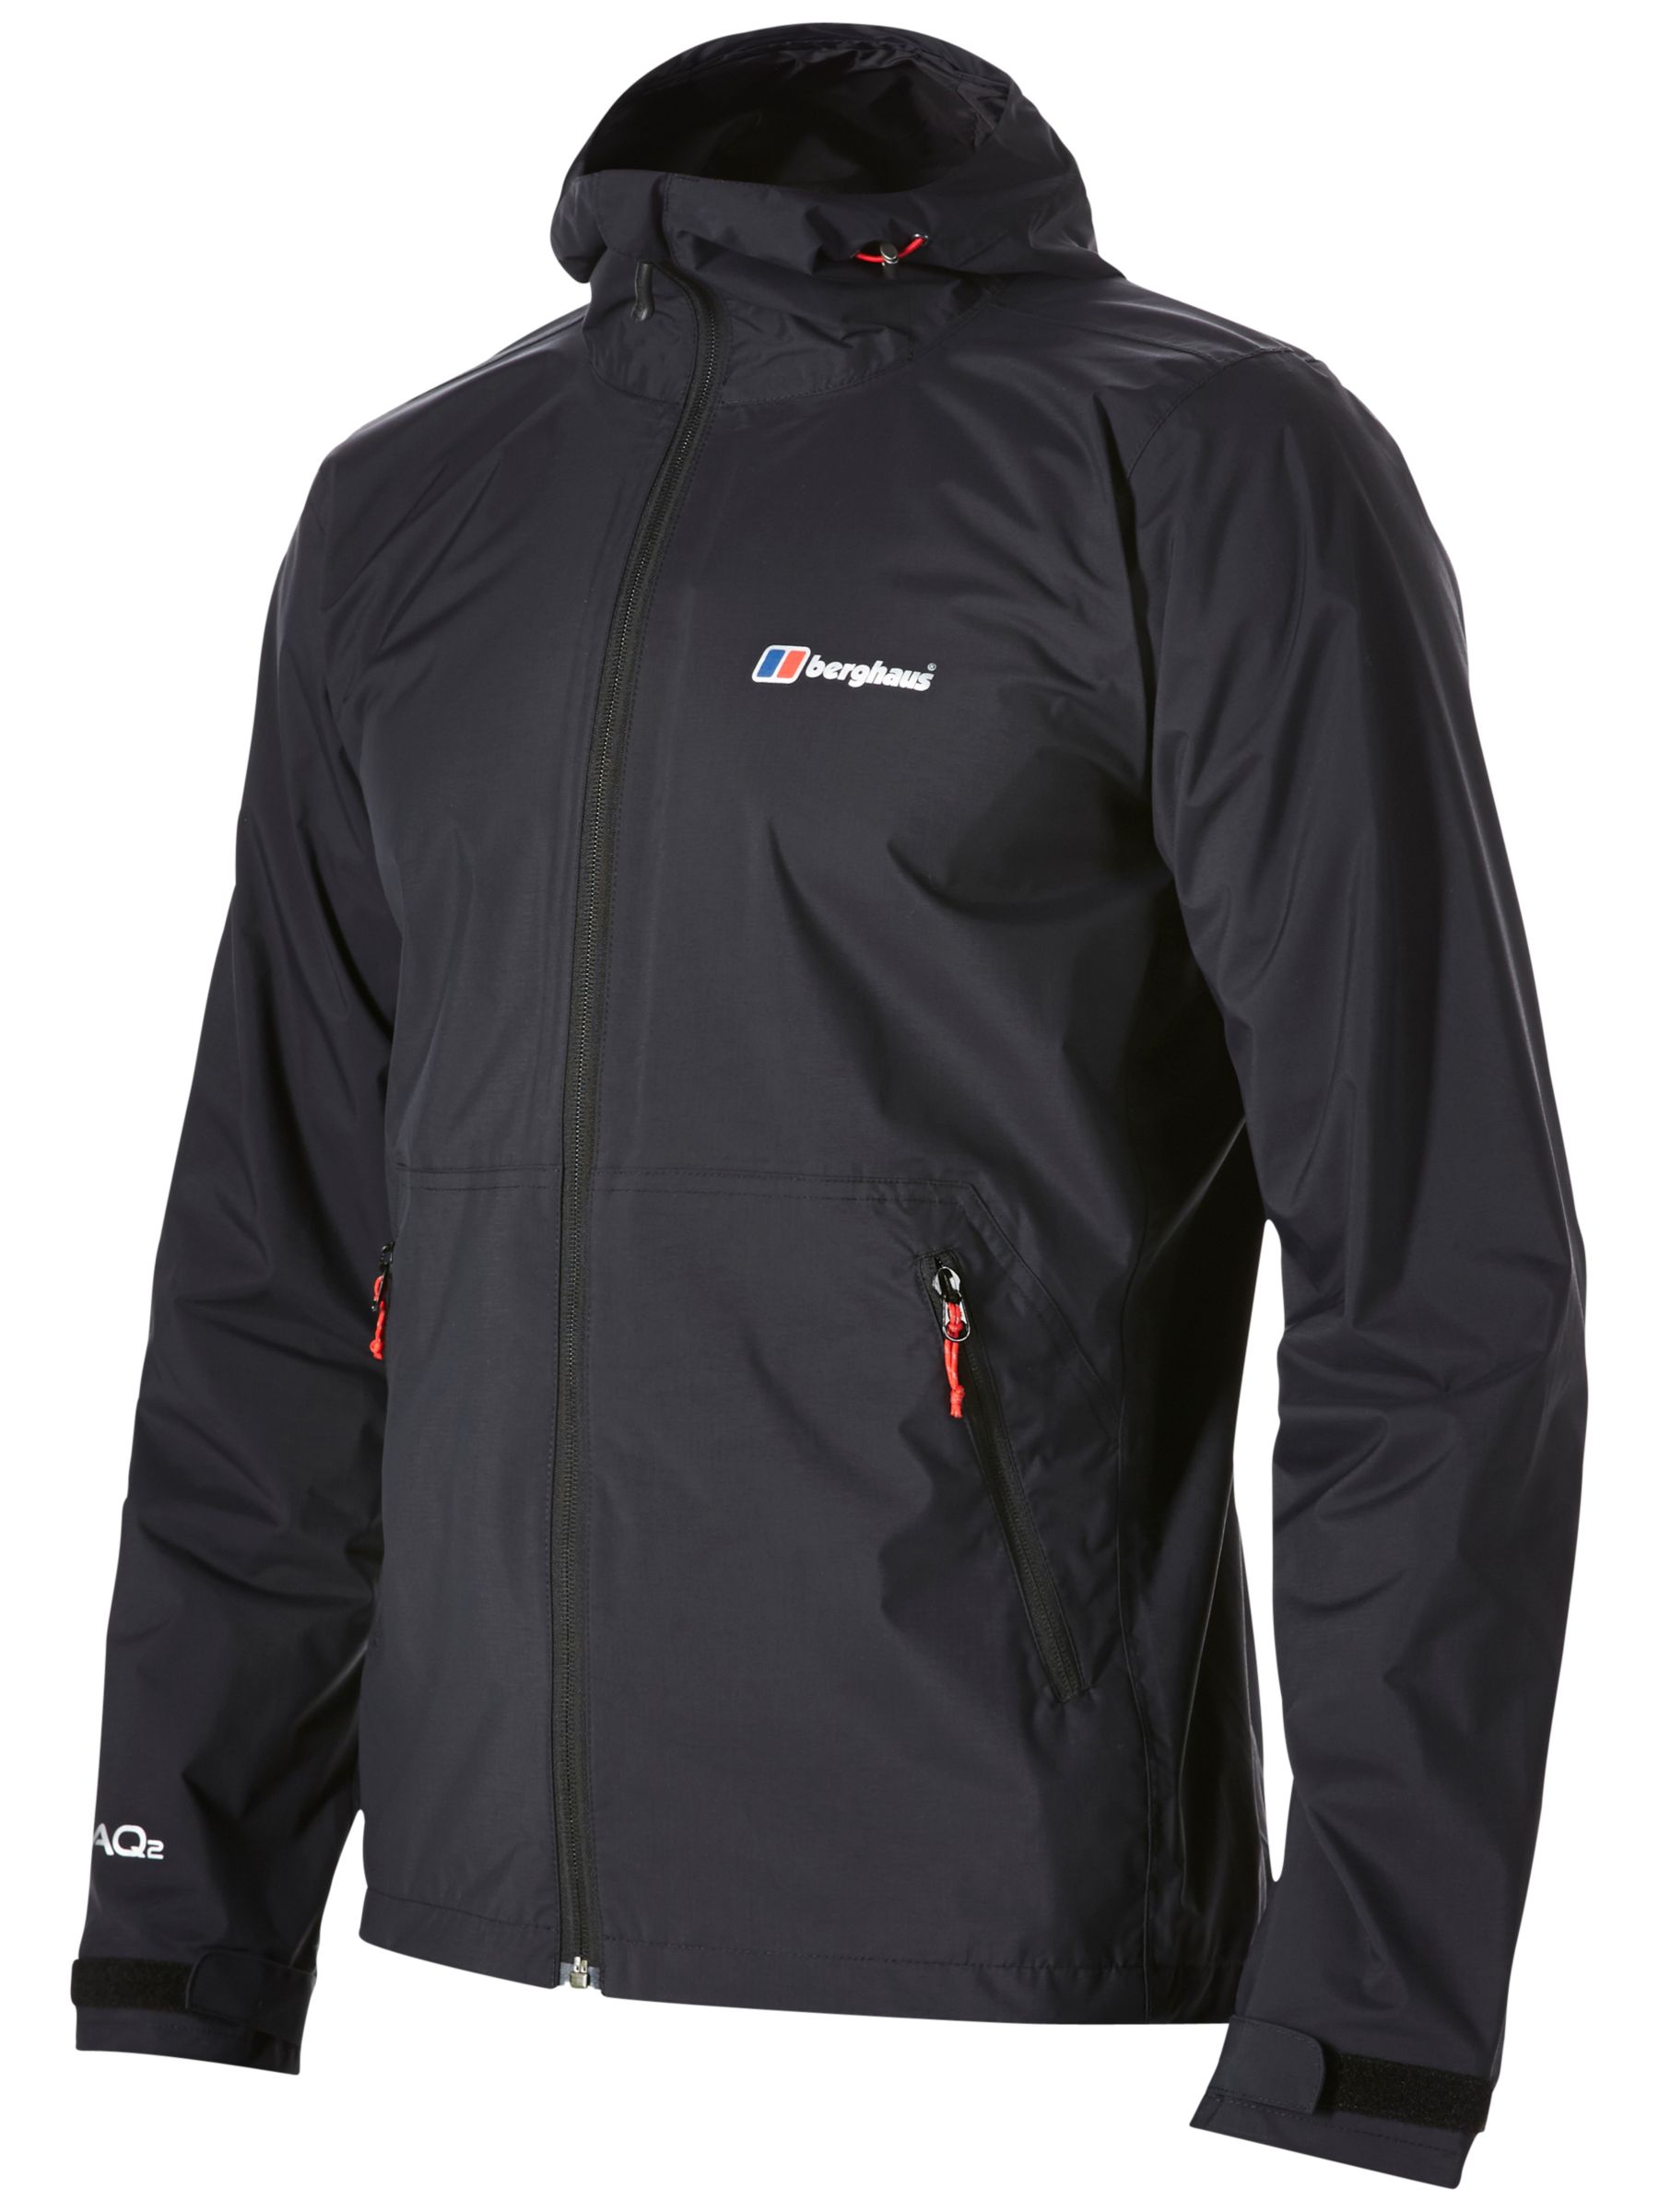 Berghaus Stormcloud Waterproof Men's Jacket, Black, M